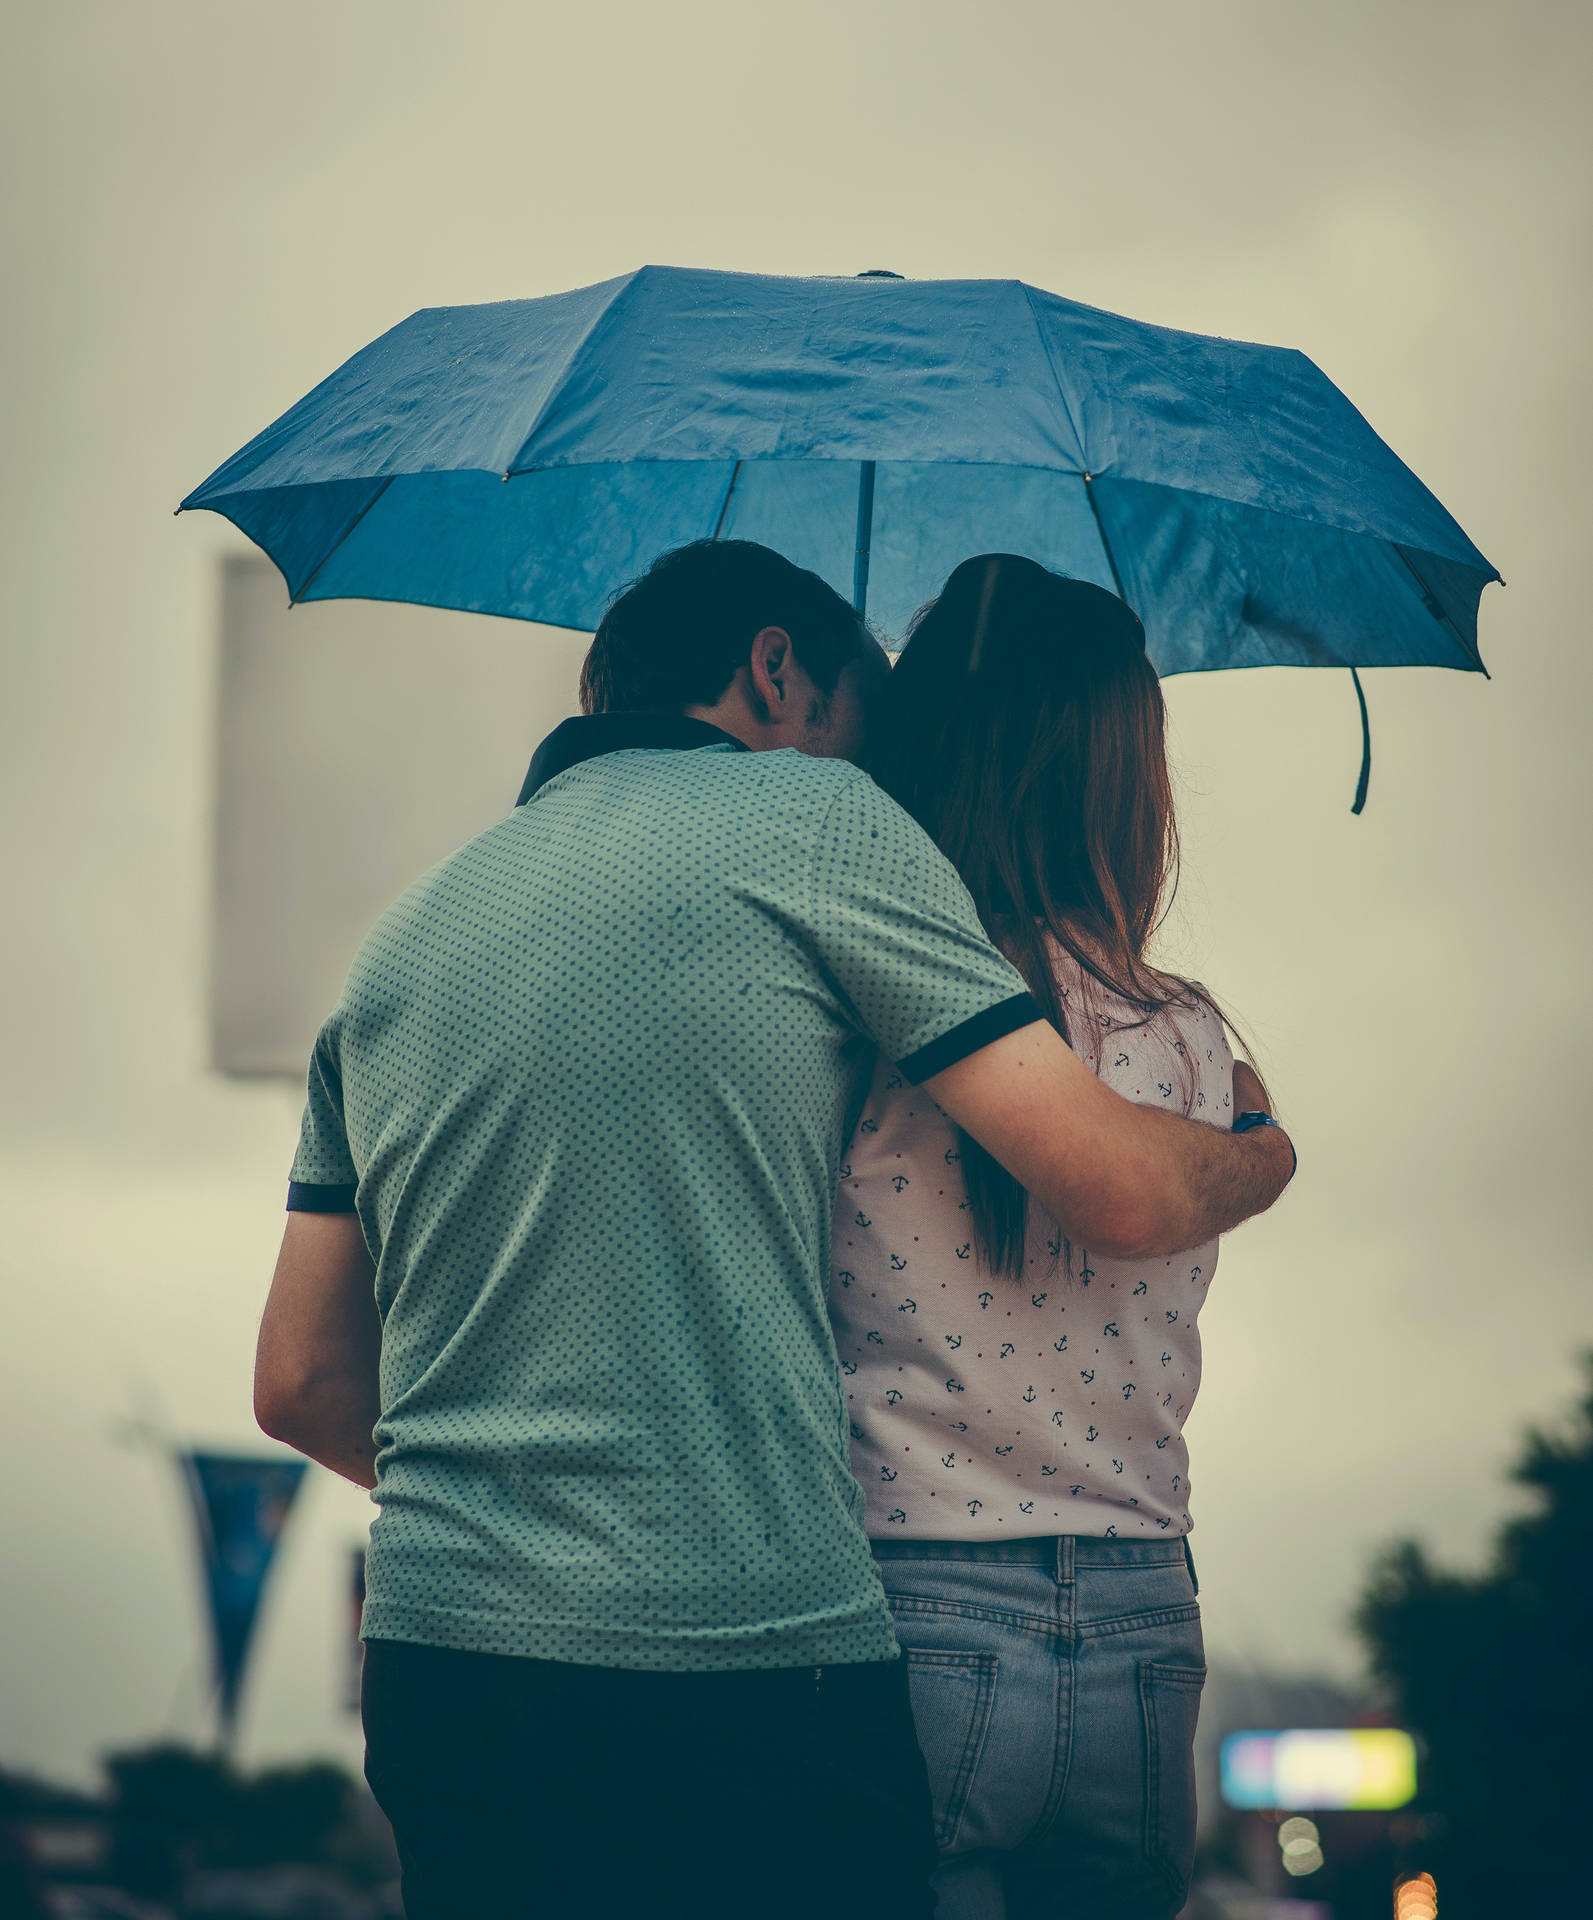 Paarverliebt Umarmt Sich Unter Einem Regenschirm Wallpaper